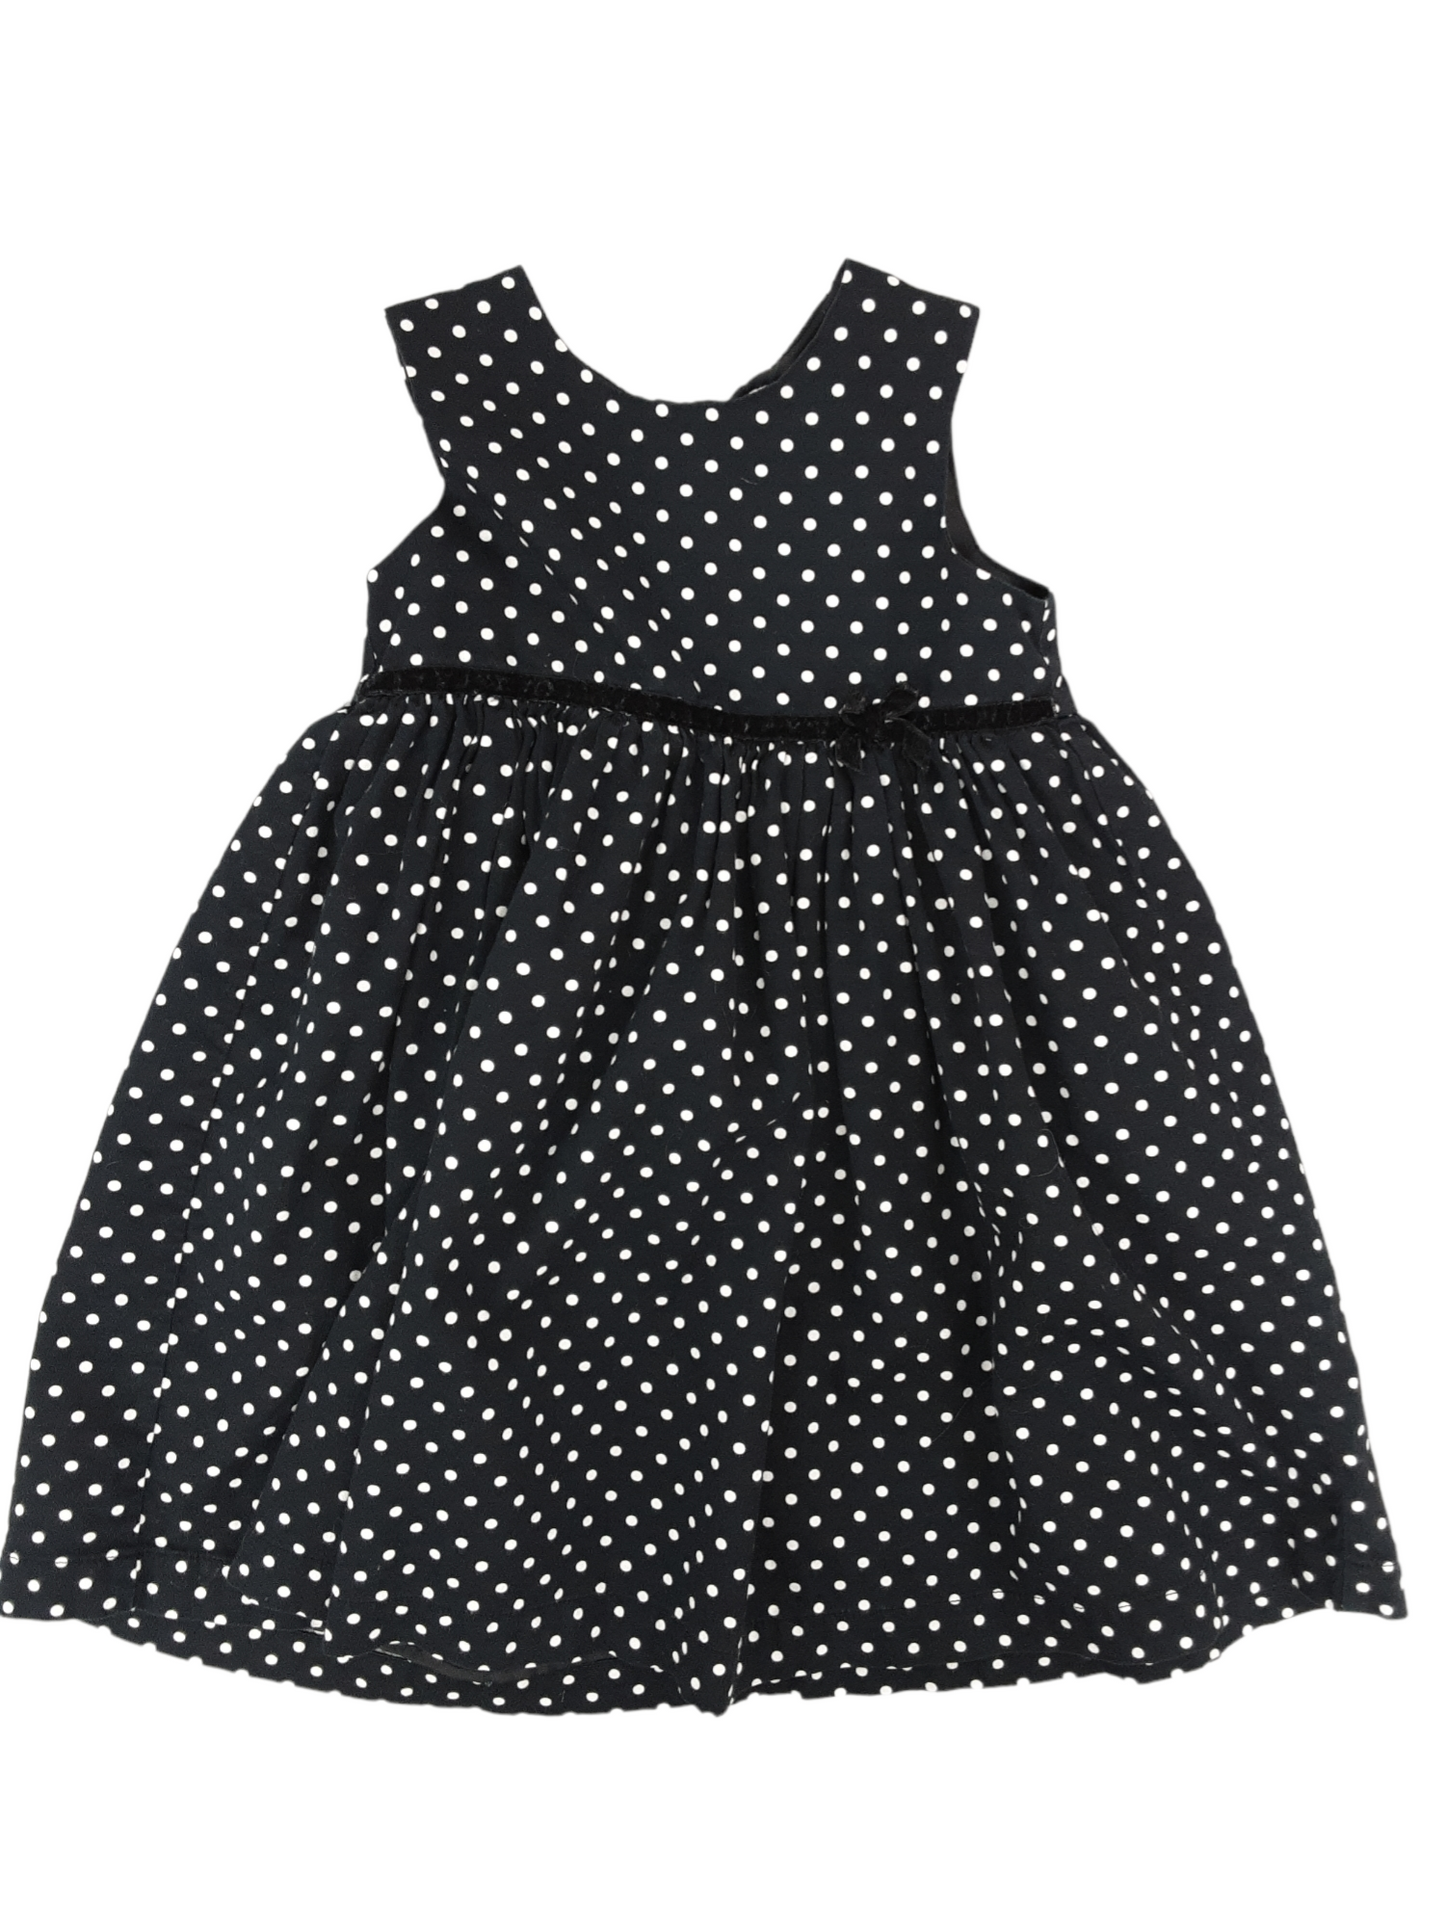 Polka dot dress size 3t